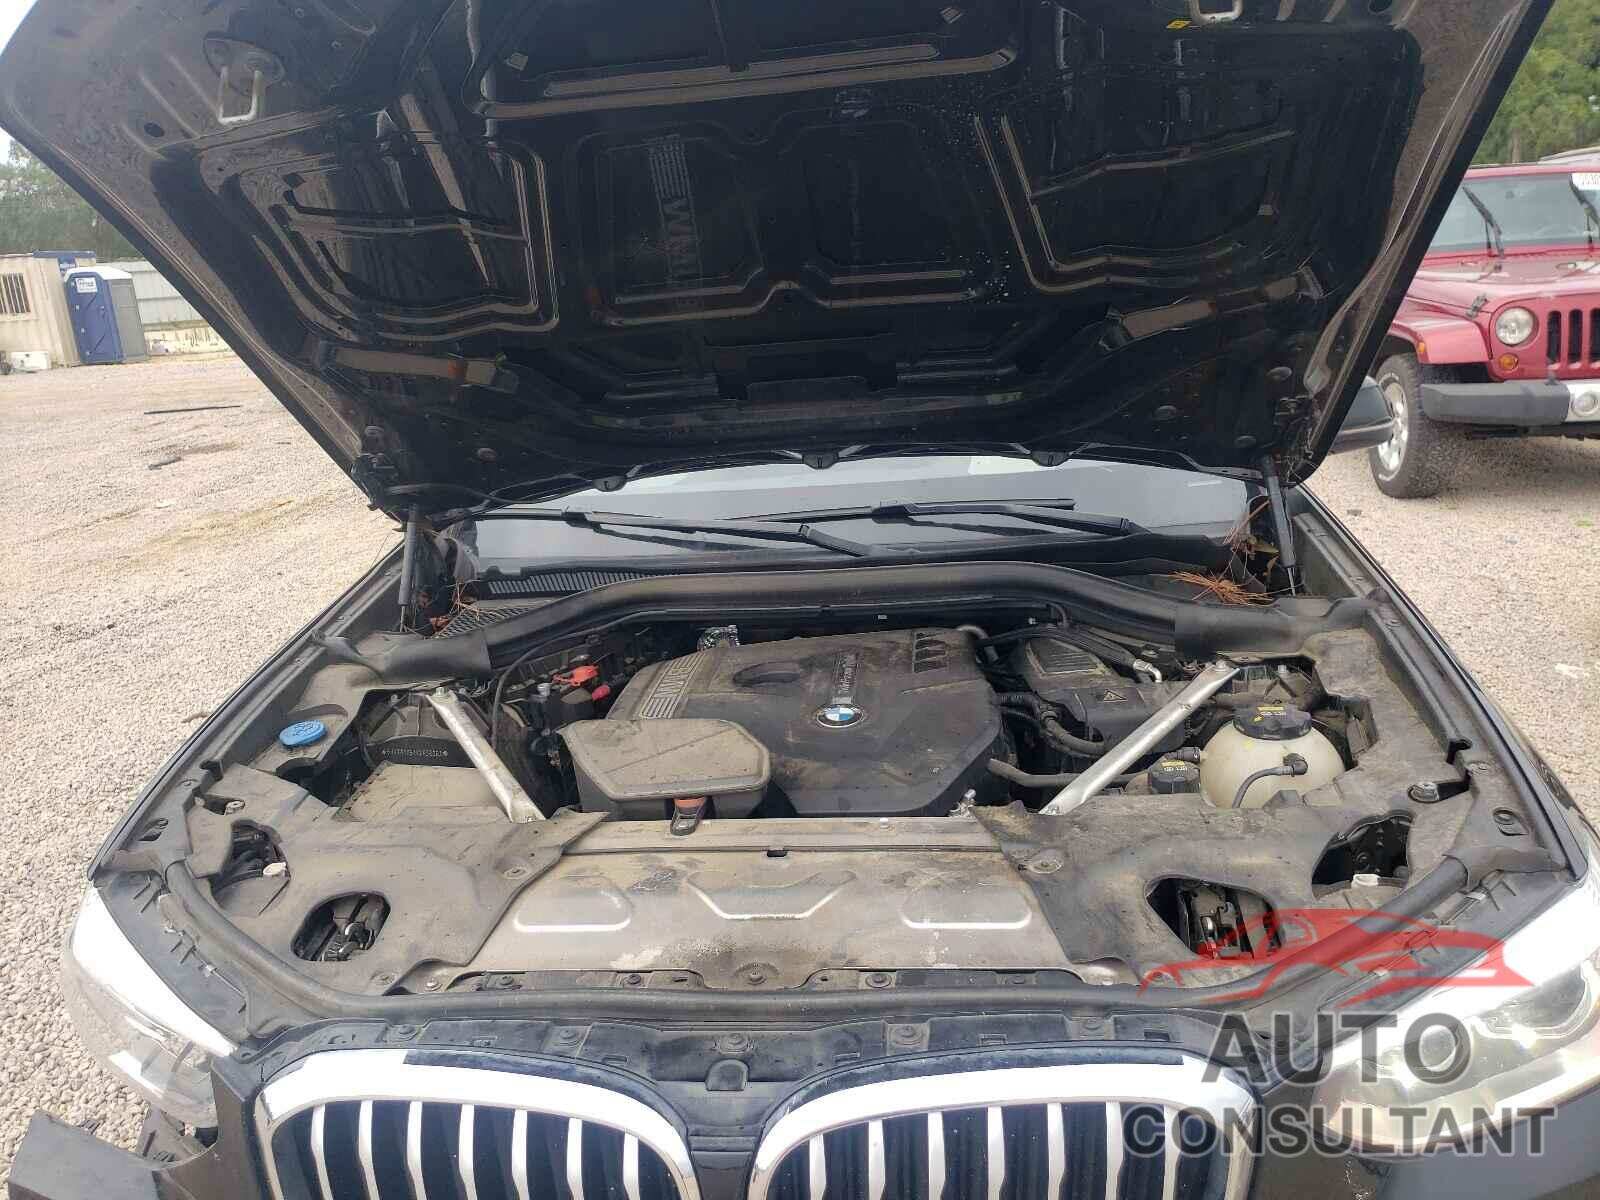 BMW X3 2019 - 5UXTR7C54KLF35063